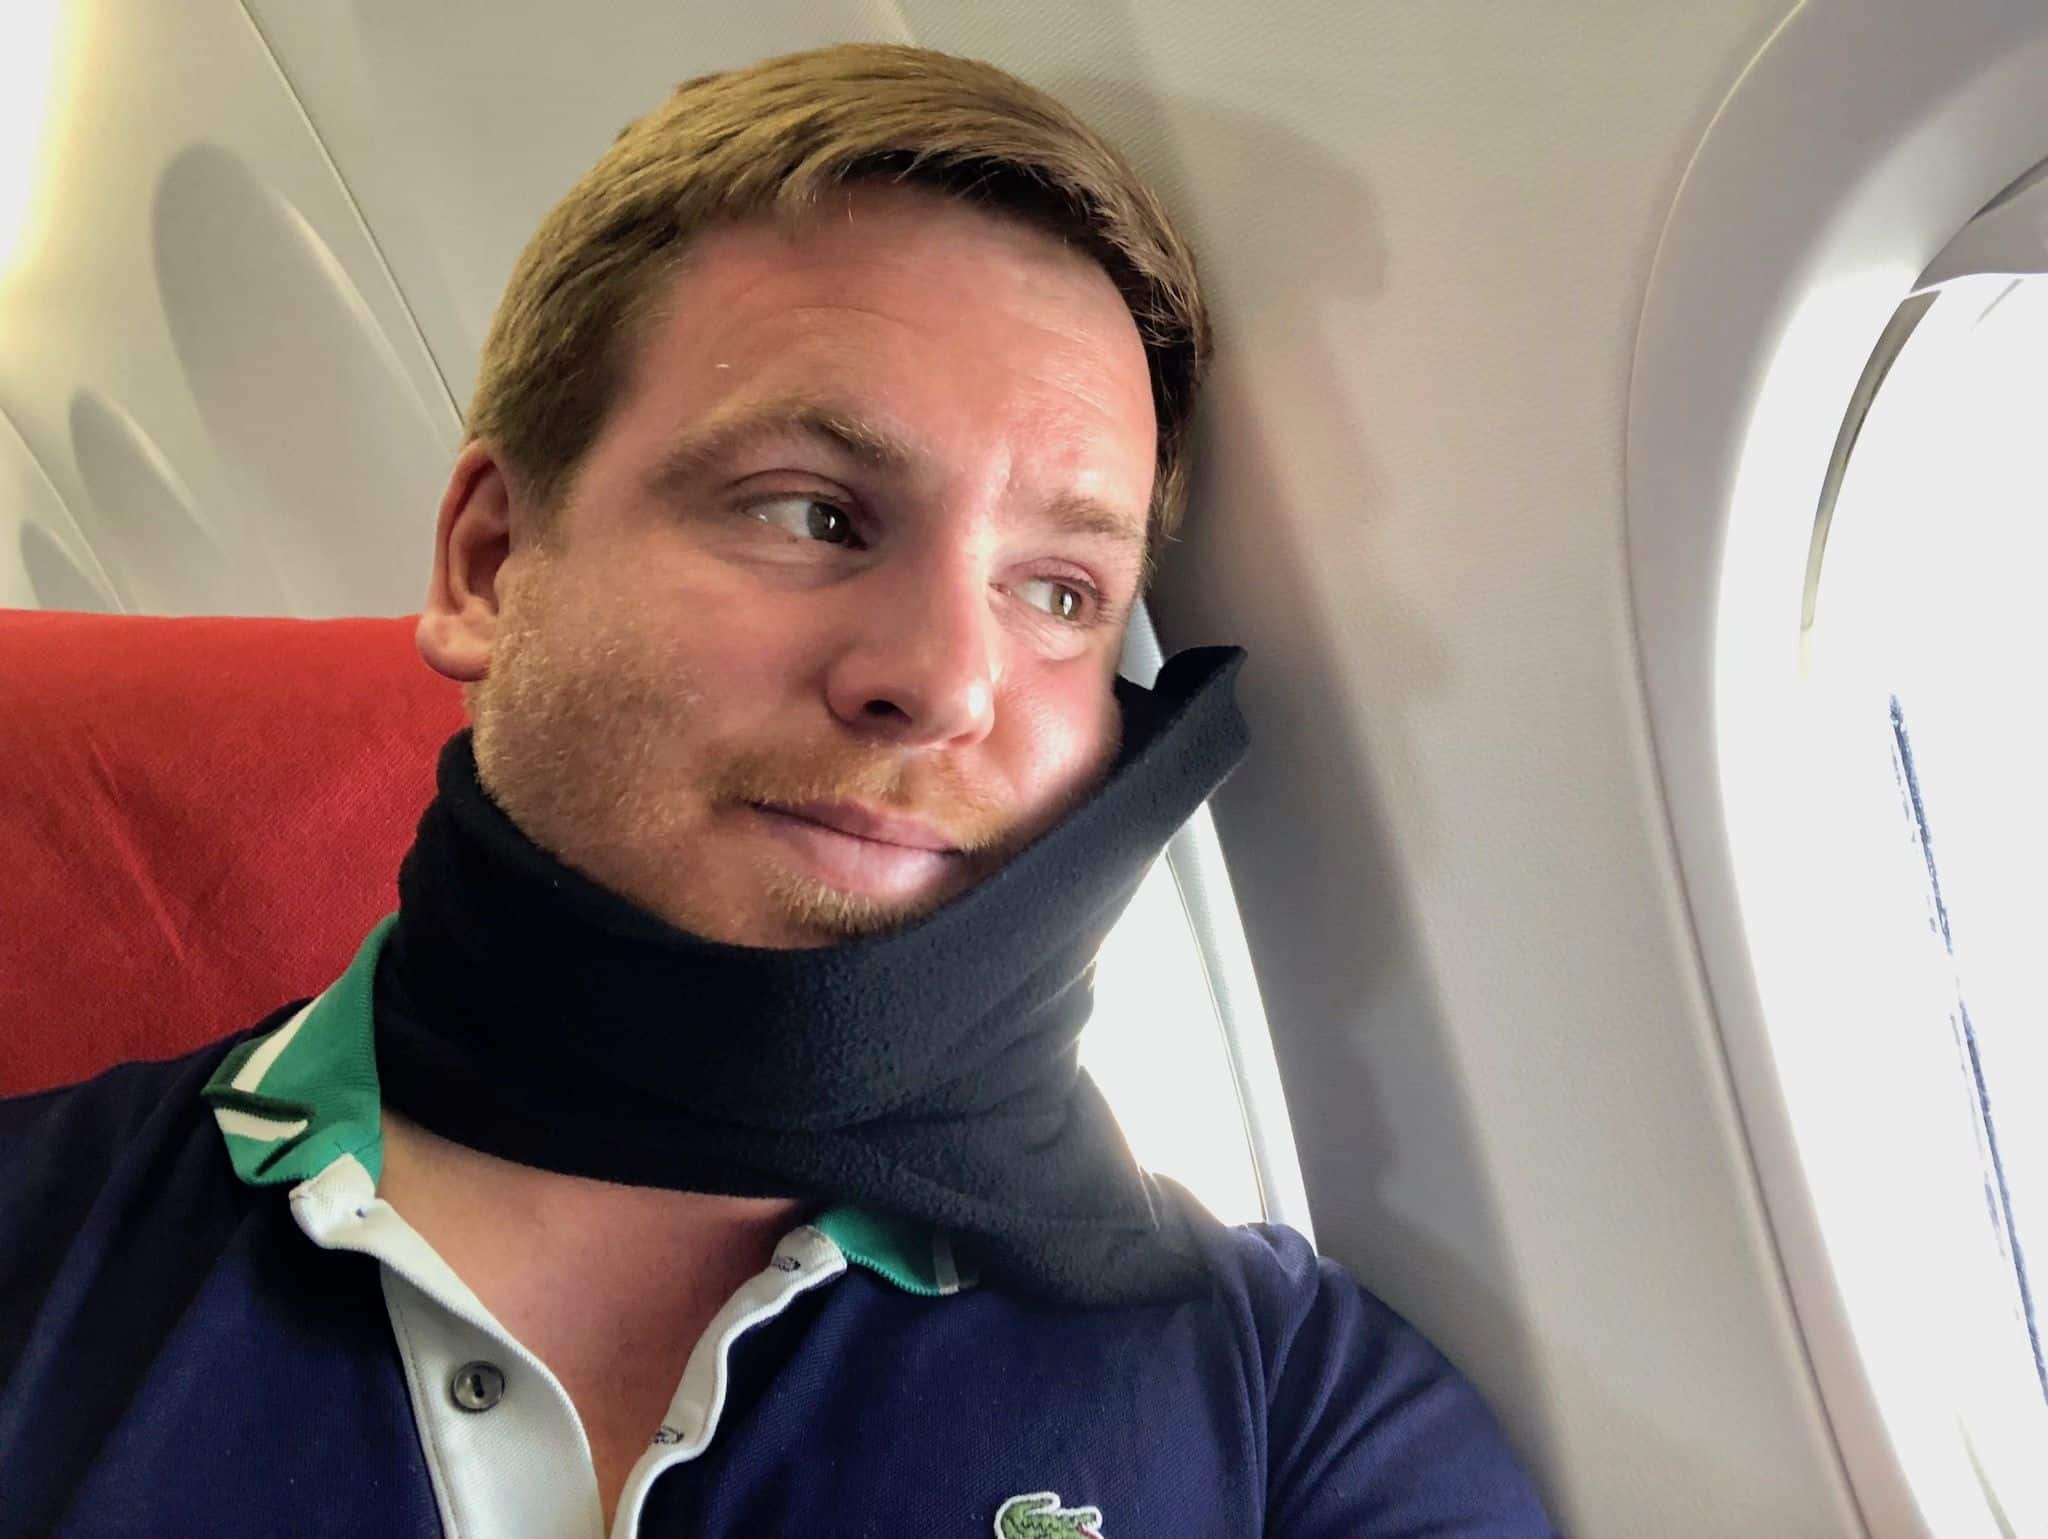 Nackenkissen für Reisen im Test: Wir haben das trtl Pillow ausprobiert. Foto: Sascha Tegtmeyer